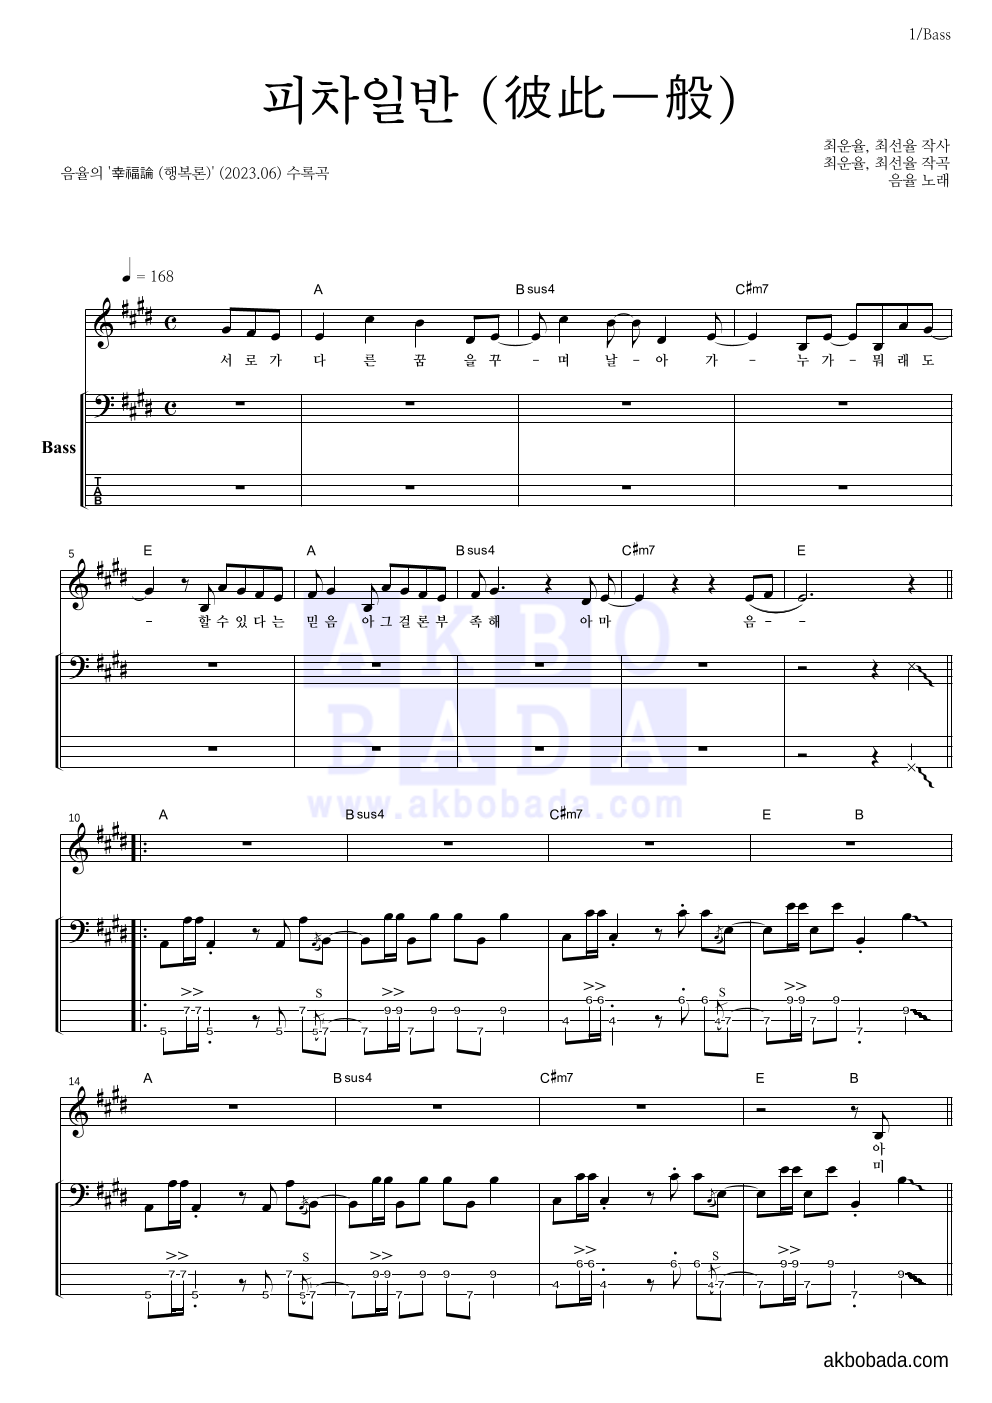 음율 - 피차일반 (彼此一般) 베이스 악보 